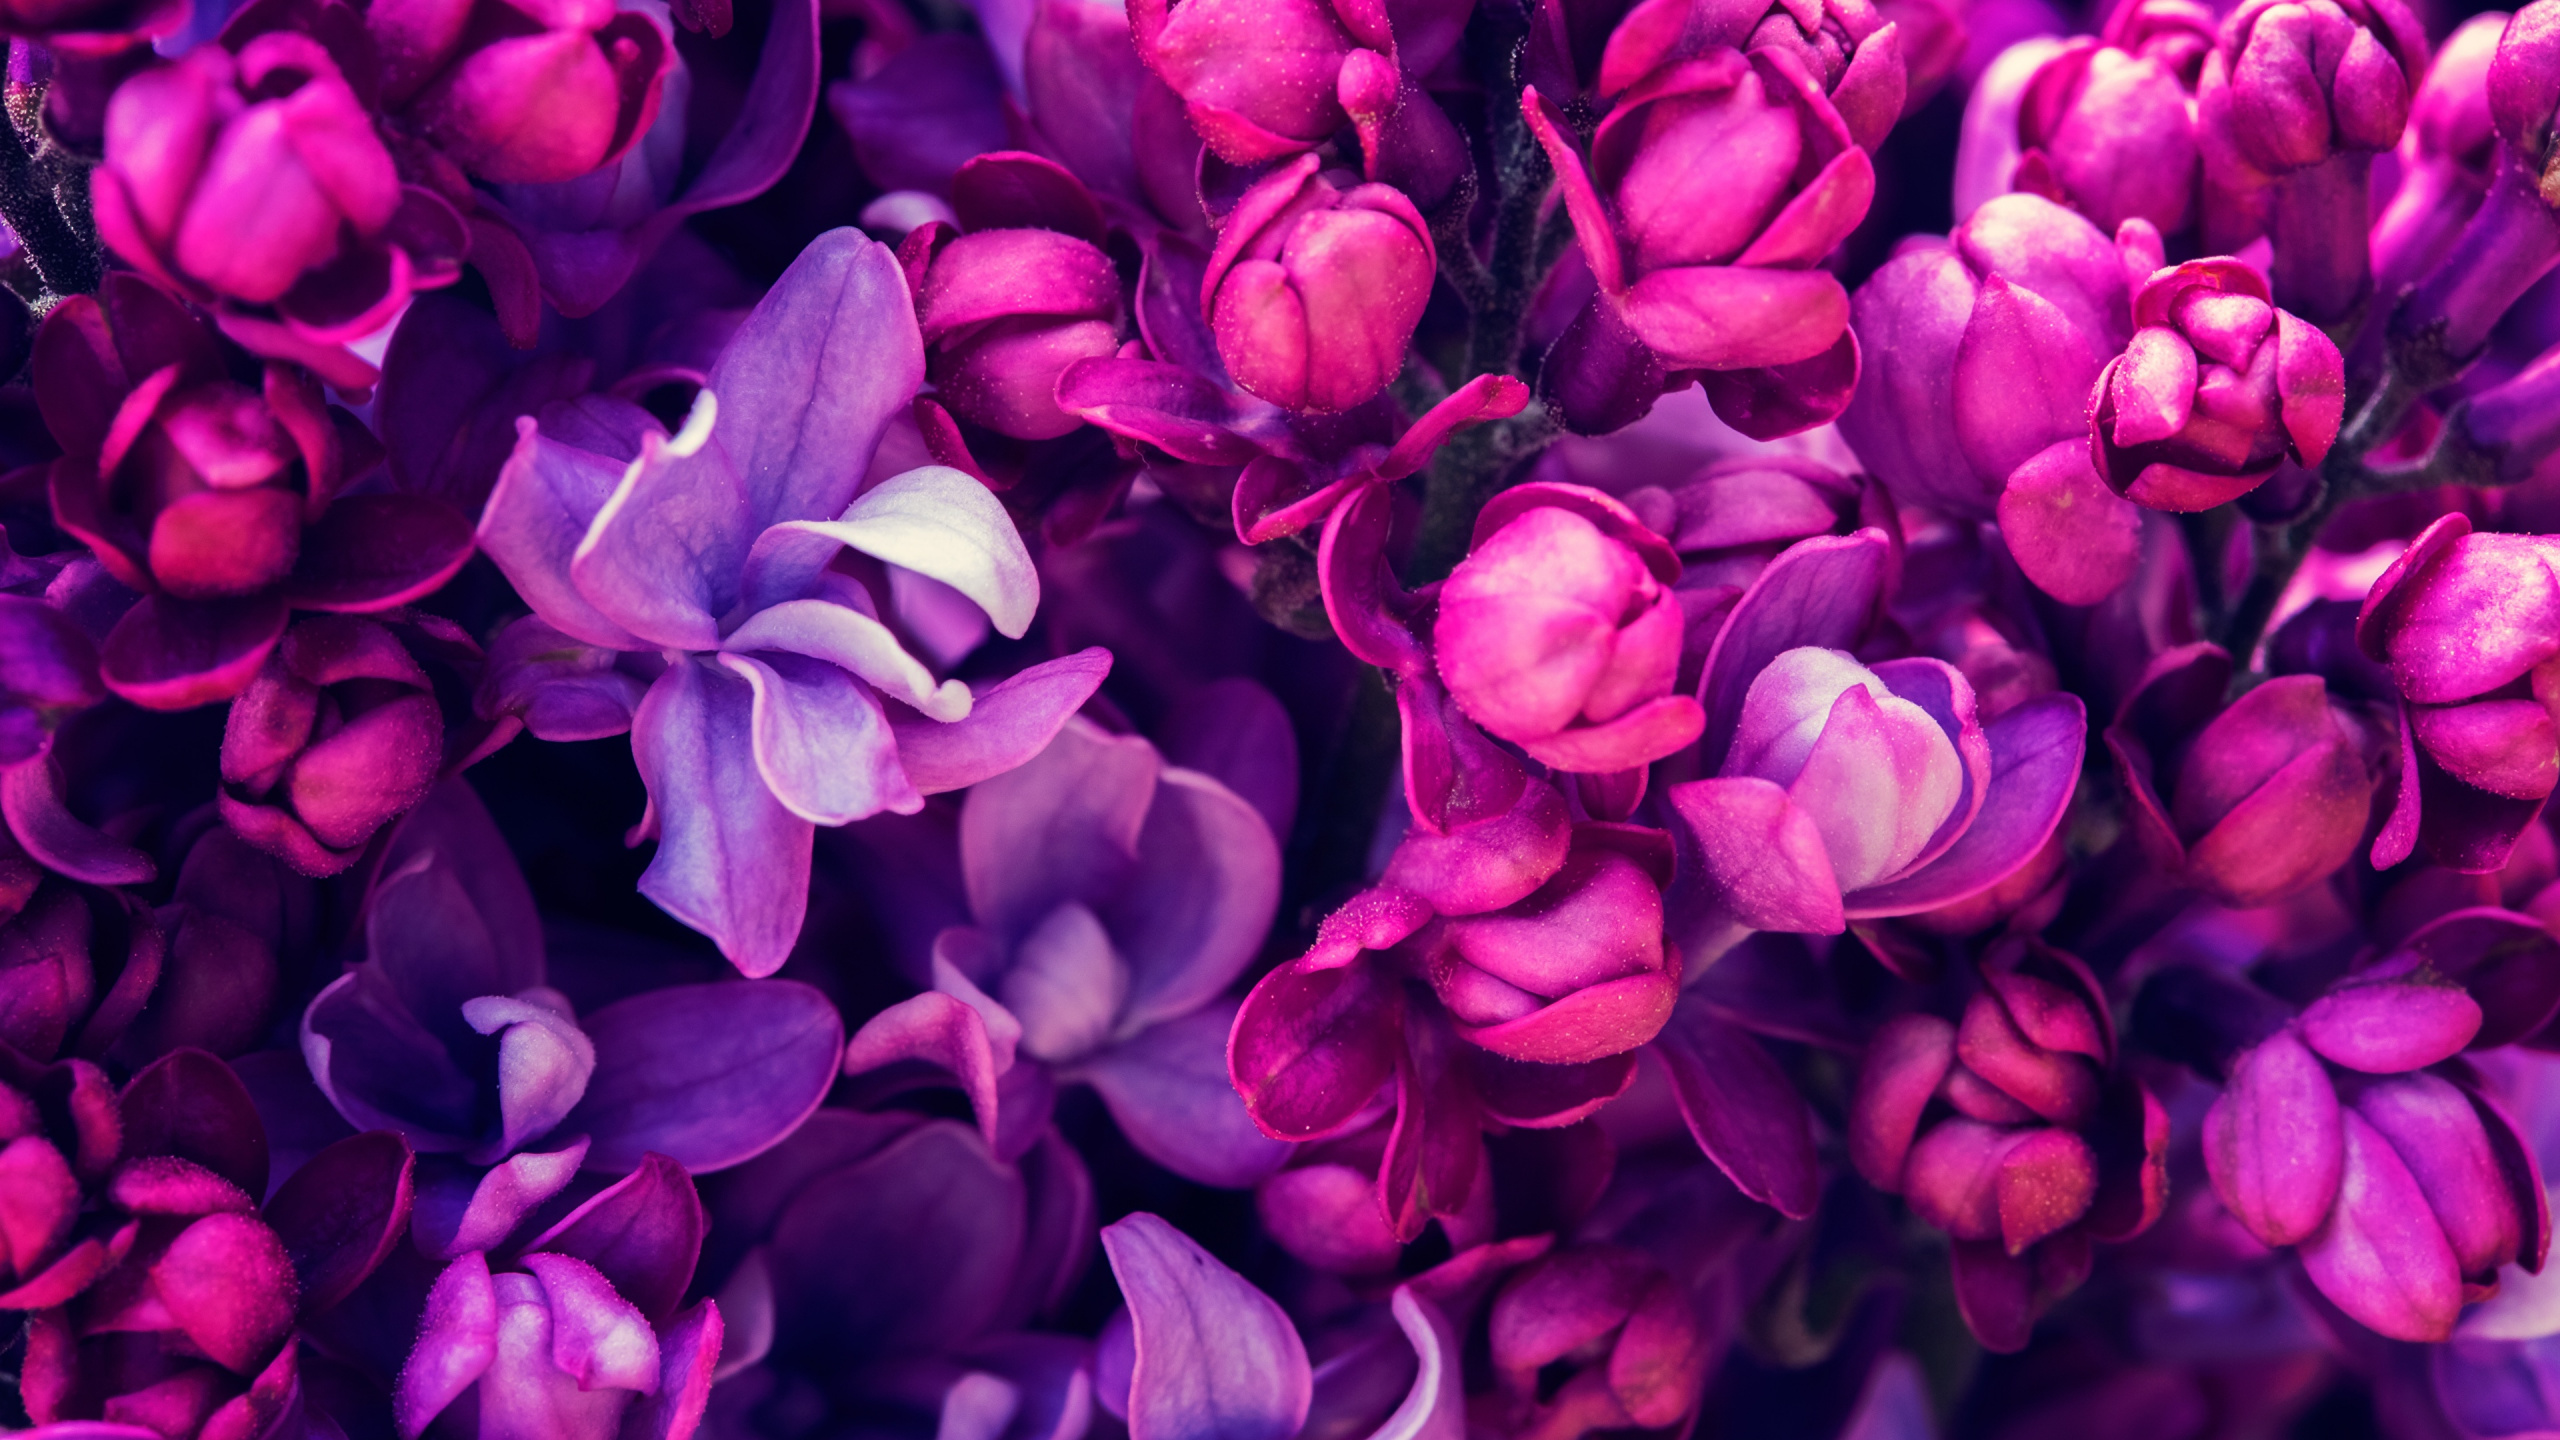 显花植物, 紫罗兰色, 颜色, 淡紫色的, 紫色的 壁纸 2560x1440 允许